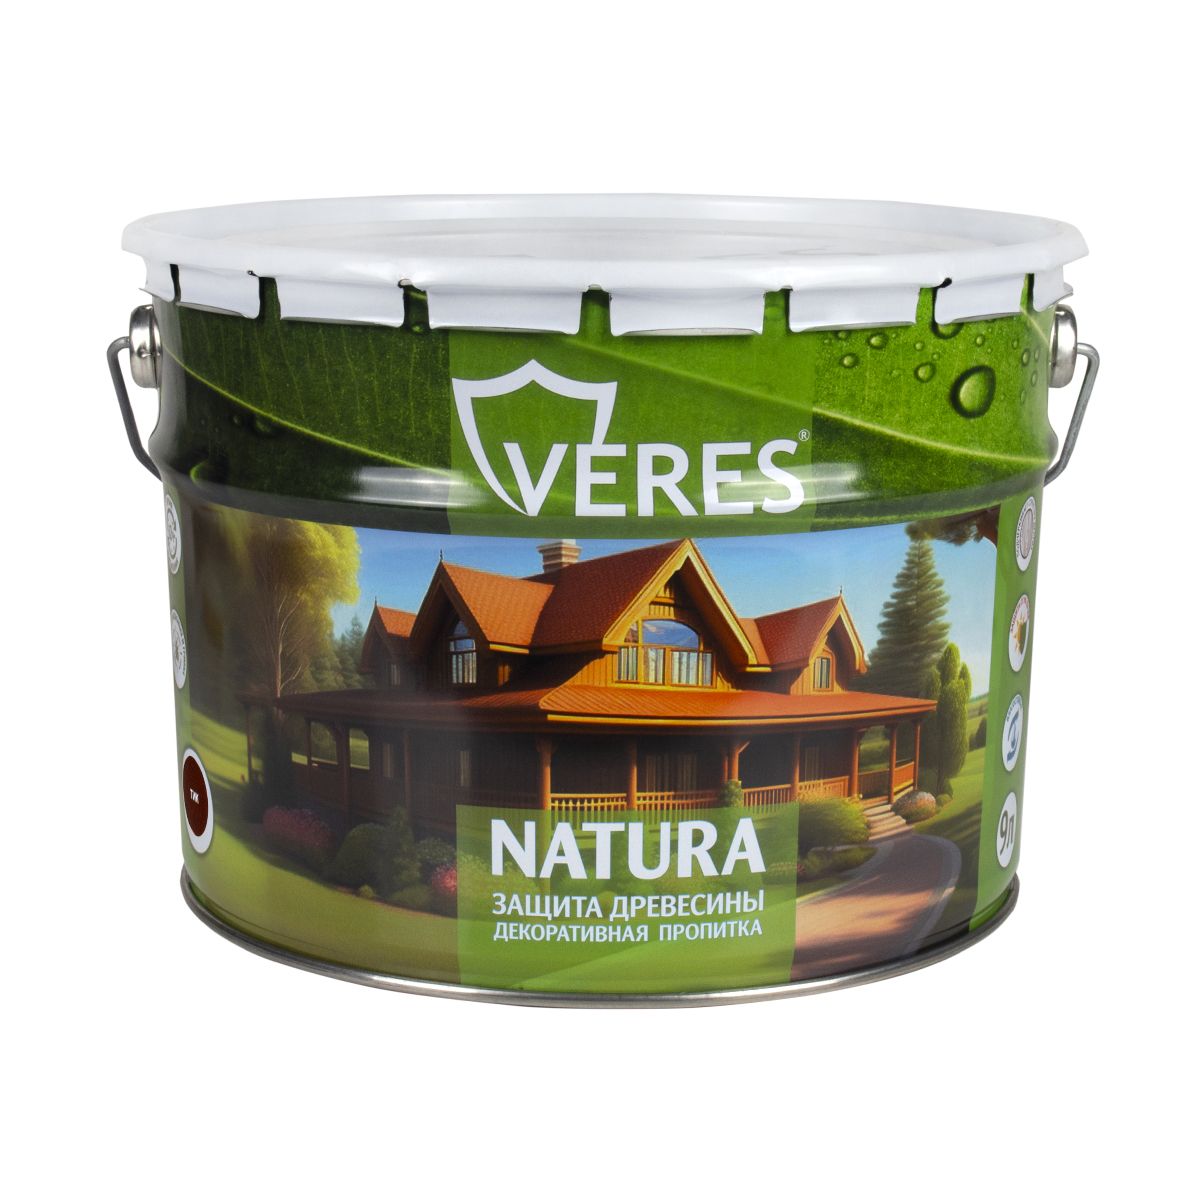 Декоративная пропитка для дерева Veres Natura полуматовая 9 л тик, VR-130